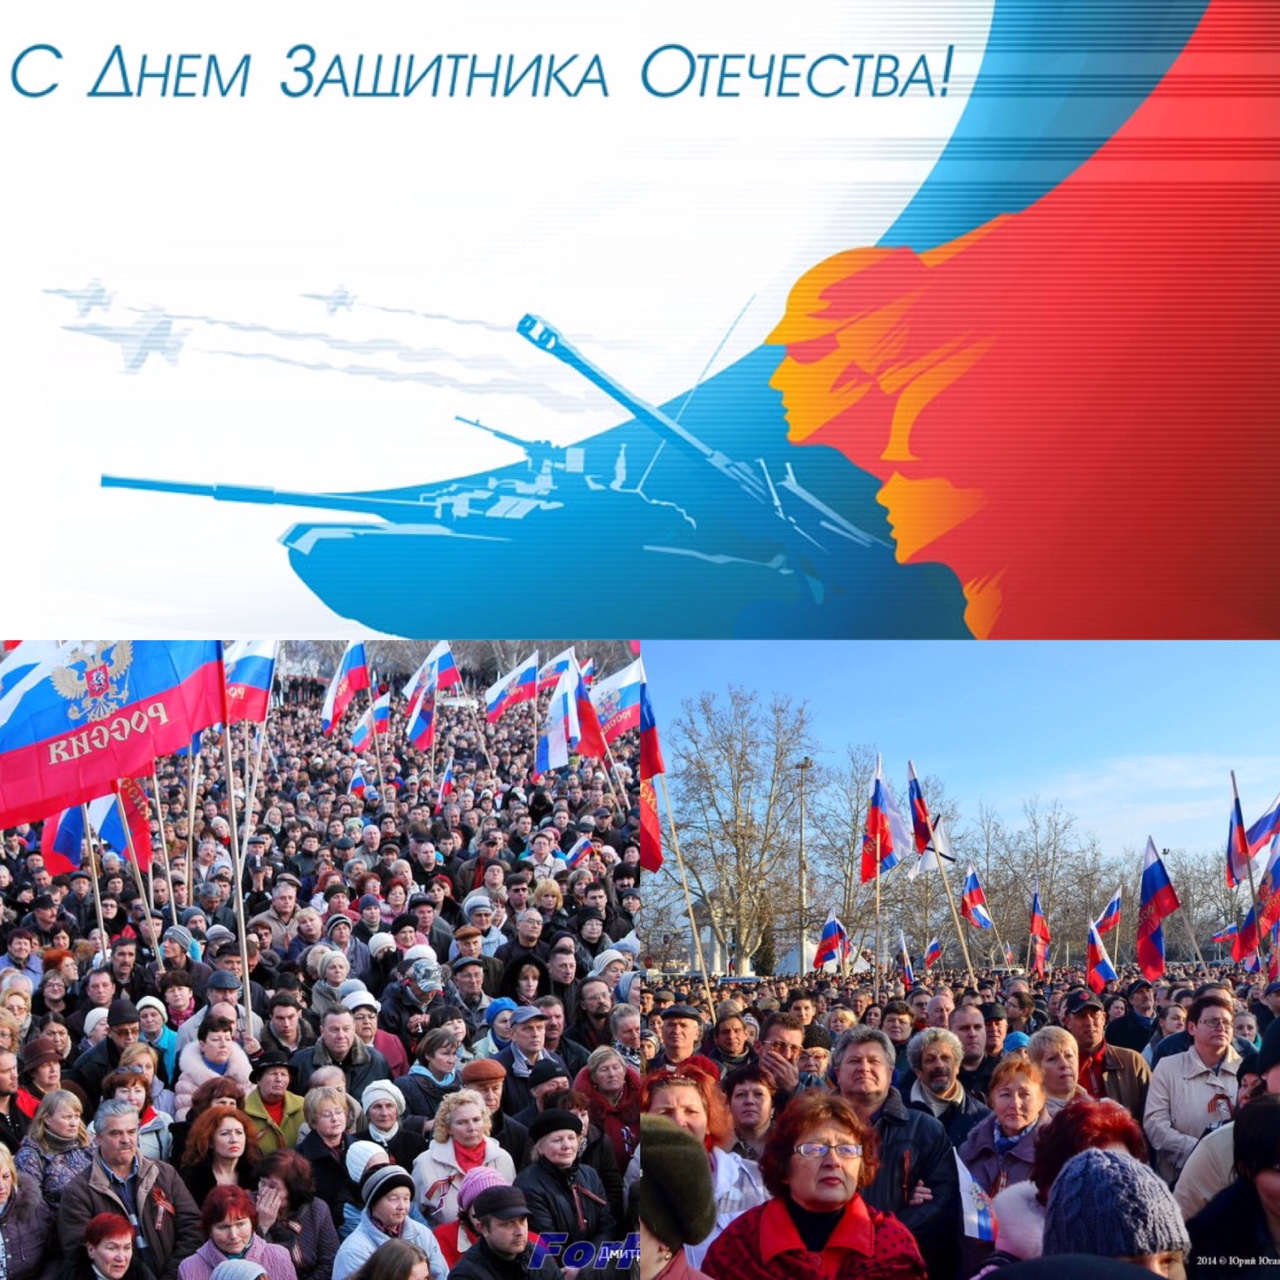 23 февраля – особый праздник в городе-герое Севастополе.